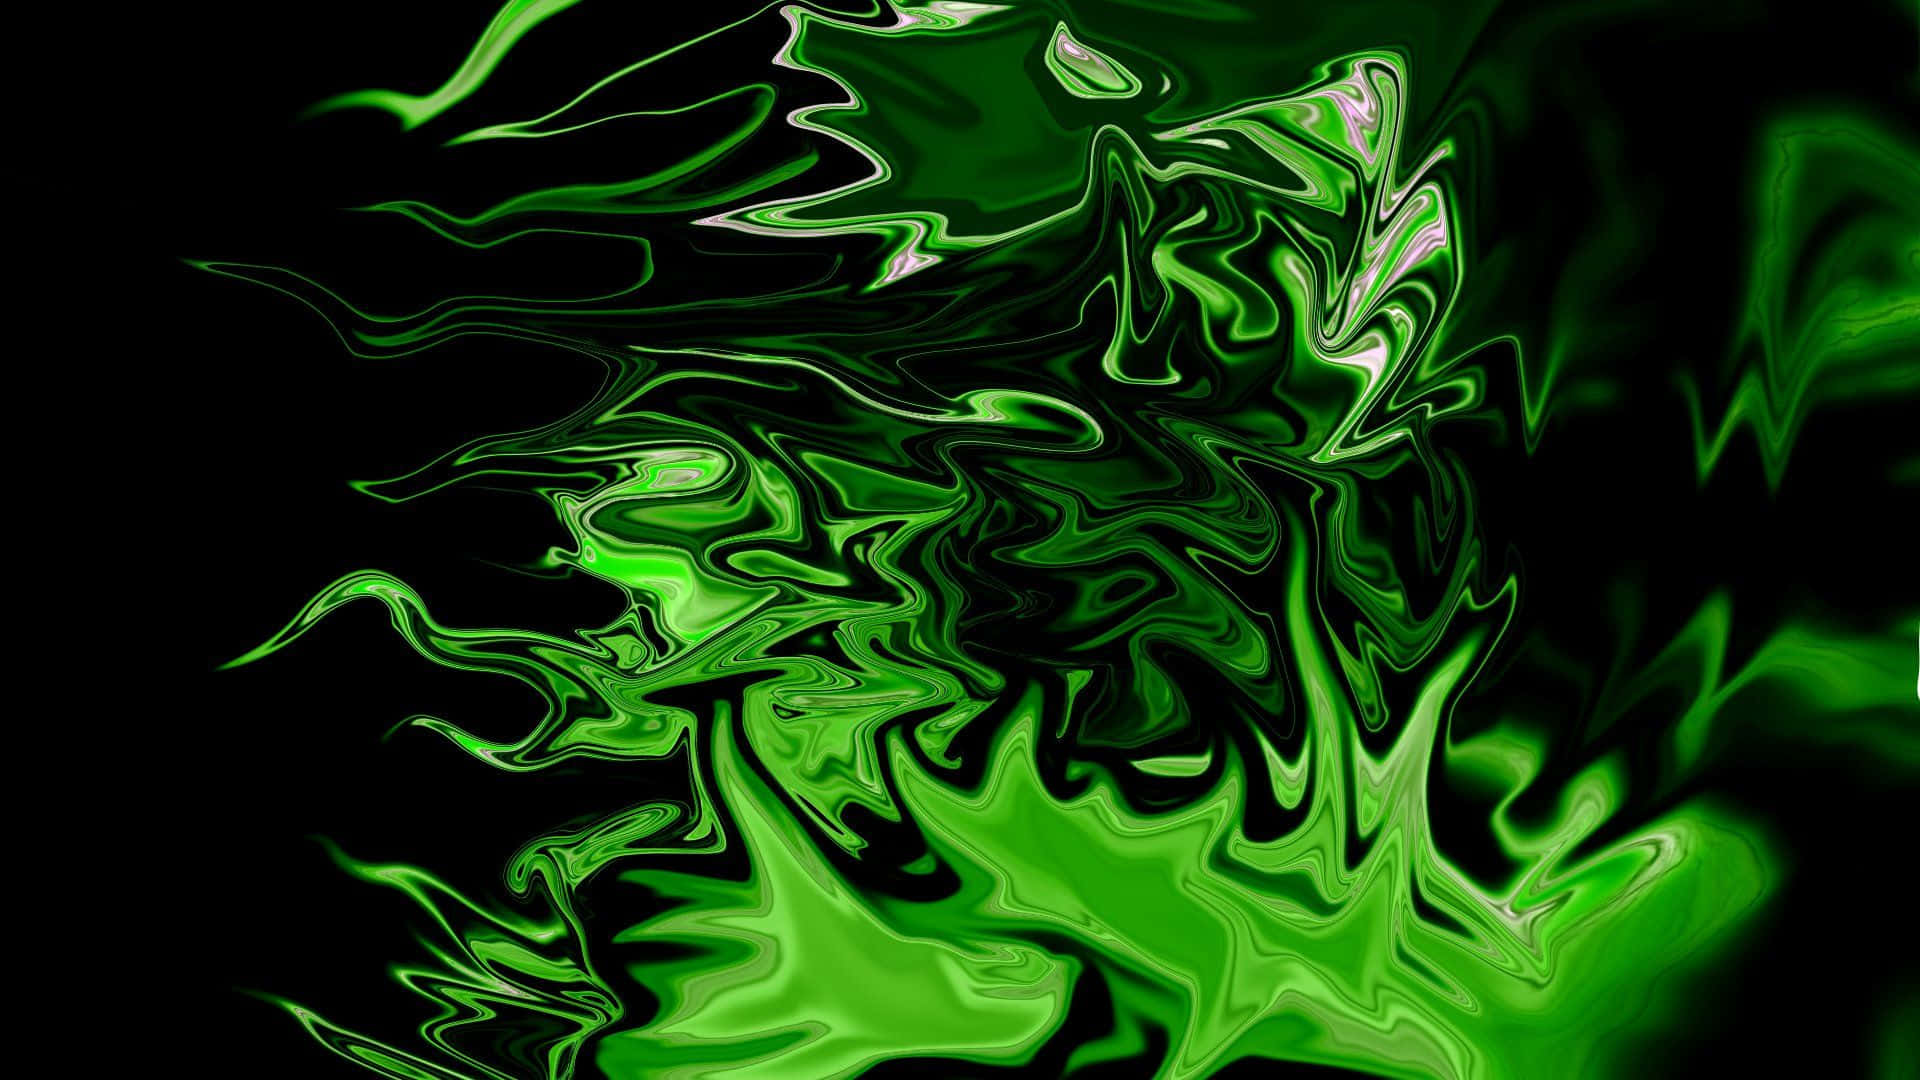 Green Abstract Art - Green Abstract Art Wallpaper